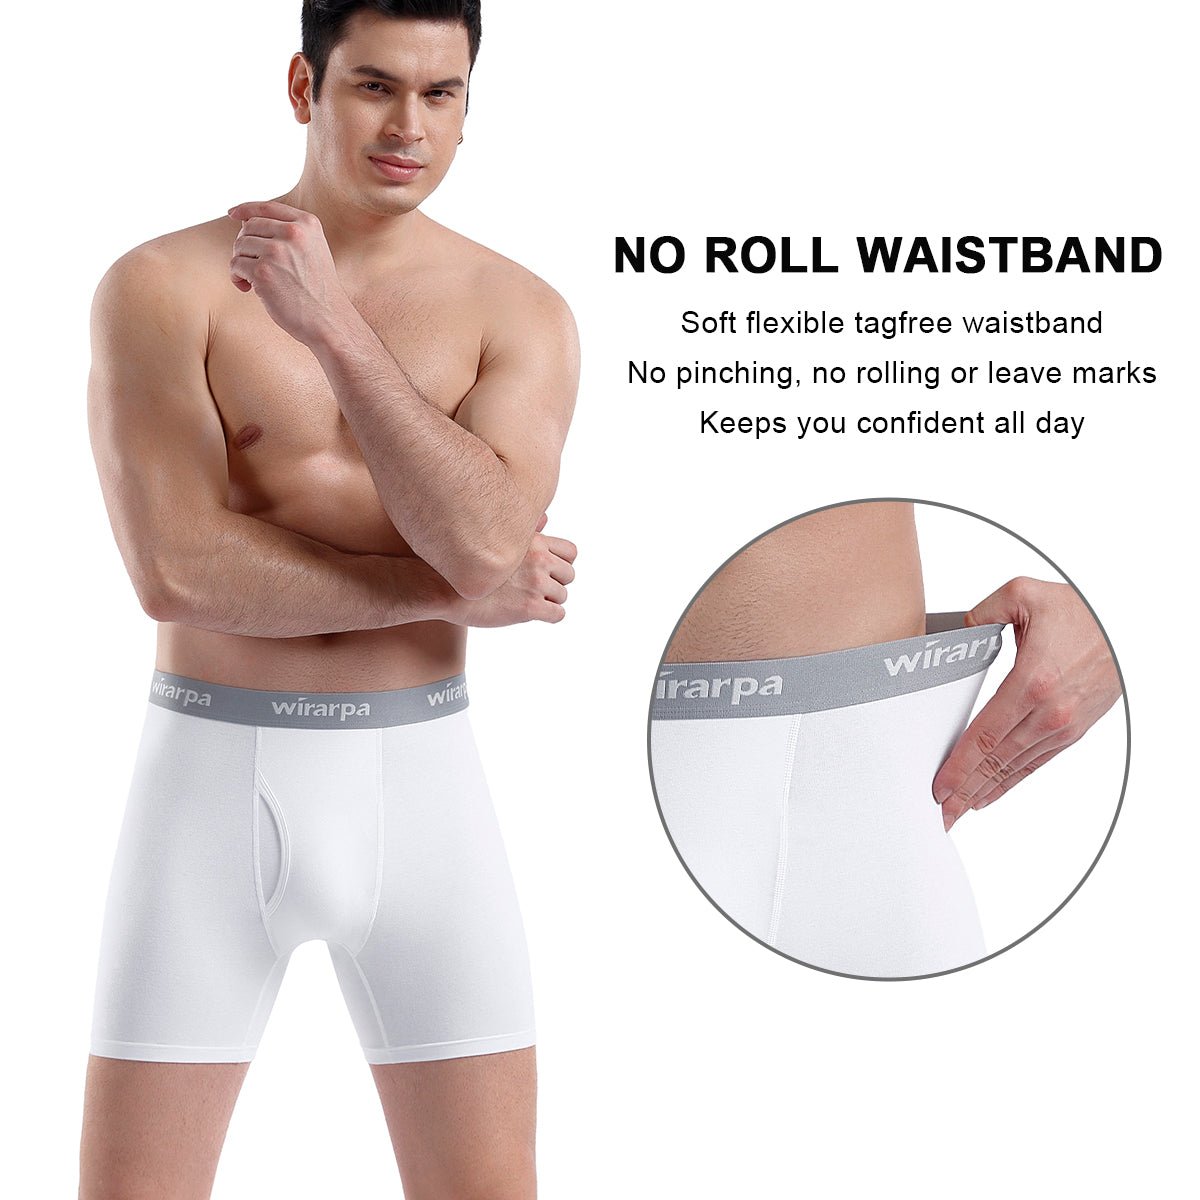 wirarpa Men's Cotton Trunks Soft Stretch Wide Waistband Underwear